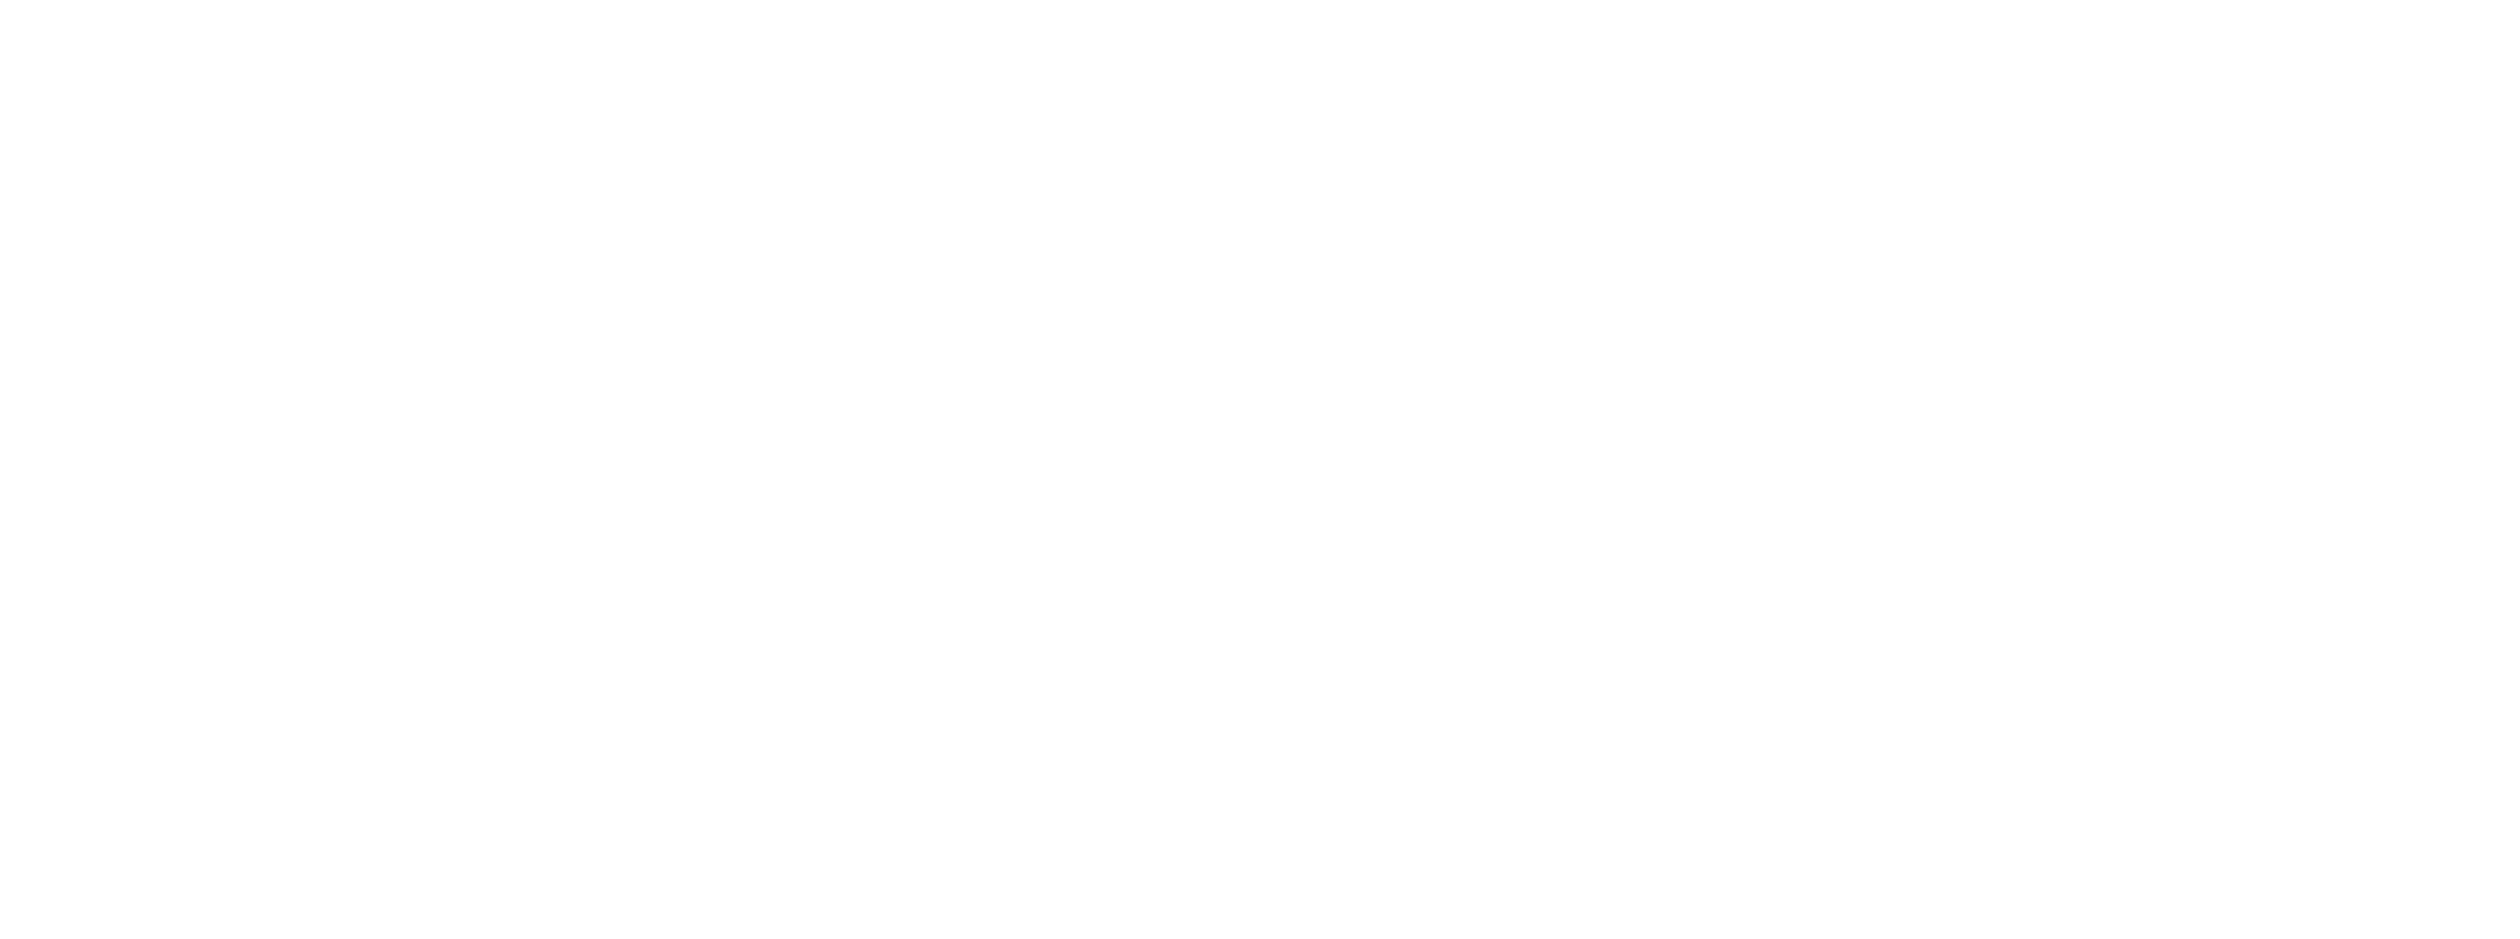 Action révolutionnaire pour le changement social et comportemental